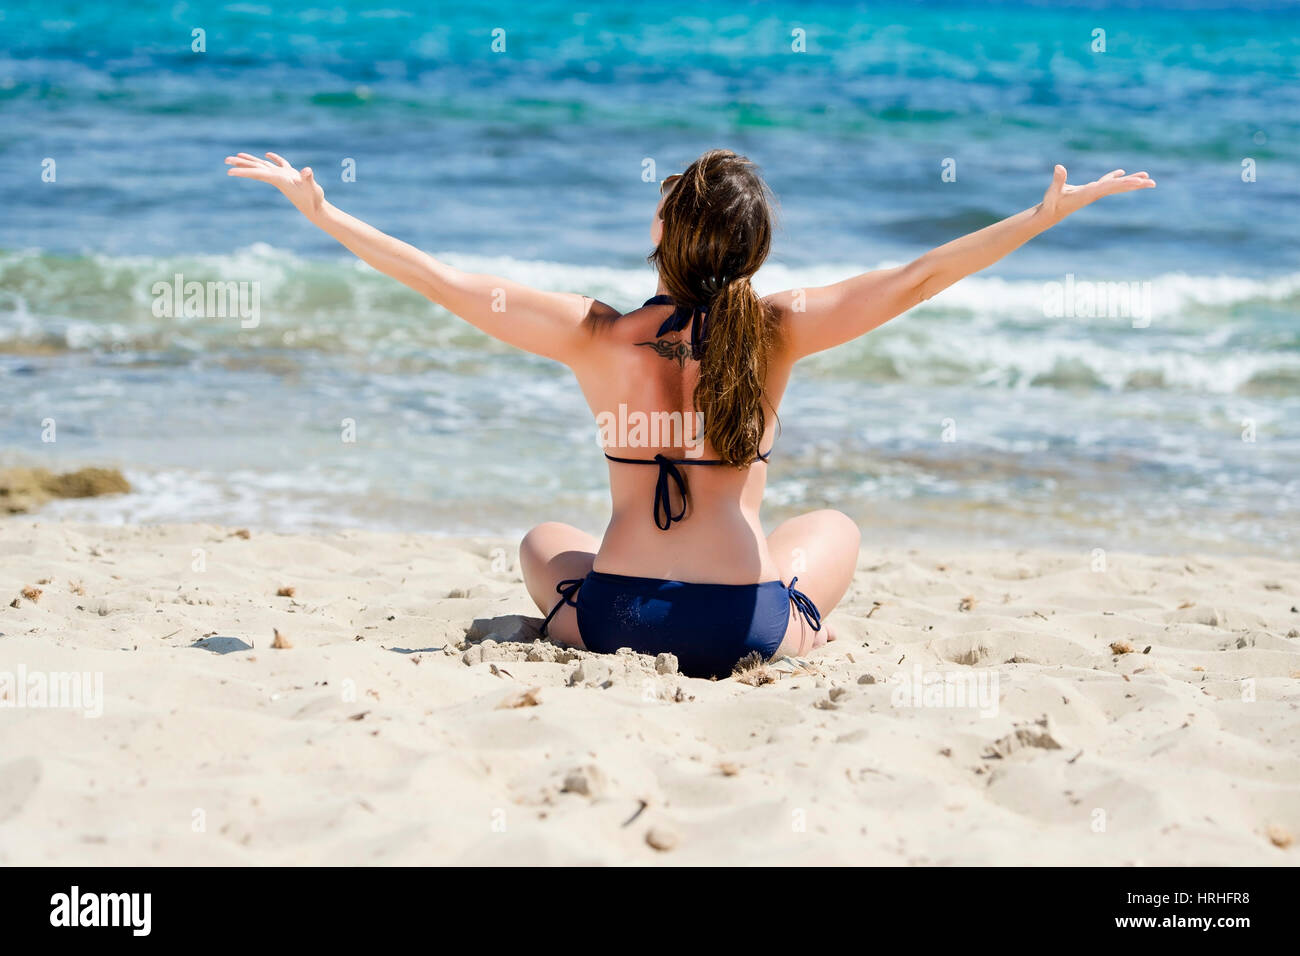 Frau Im Bikini Geniesst Den Urlaub bin Strand, Ibiza, Spanien - Frau macht Urlaub am Strand, Ibiza, Spanien Stockfoto